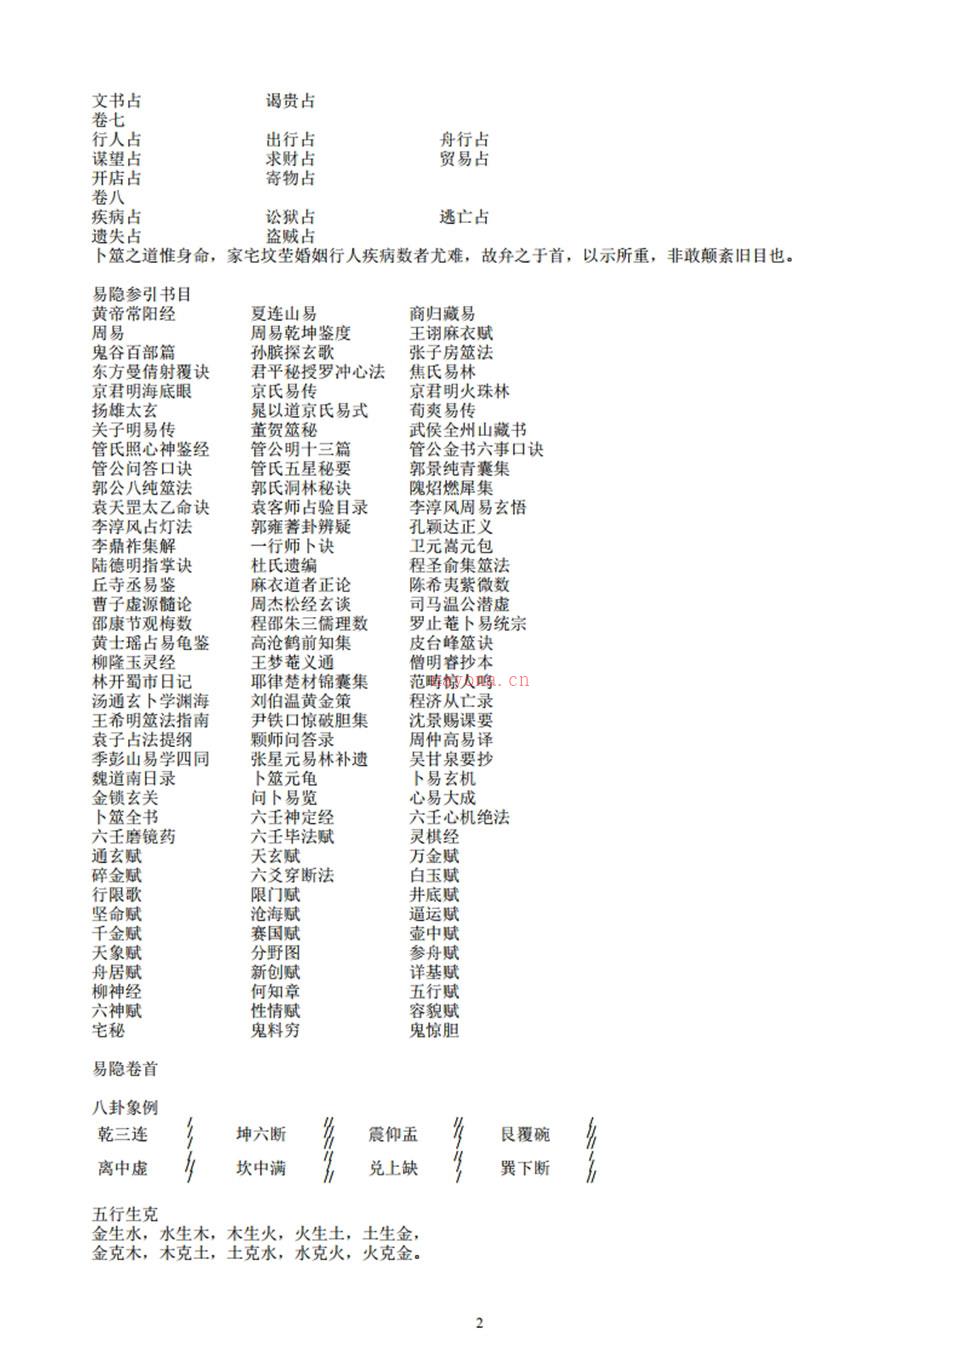 《易隐》 曹九锡着 容易法师整理 子息校点.pdf 百度网盘资源